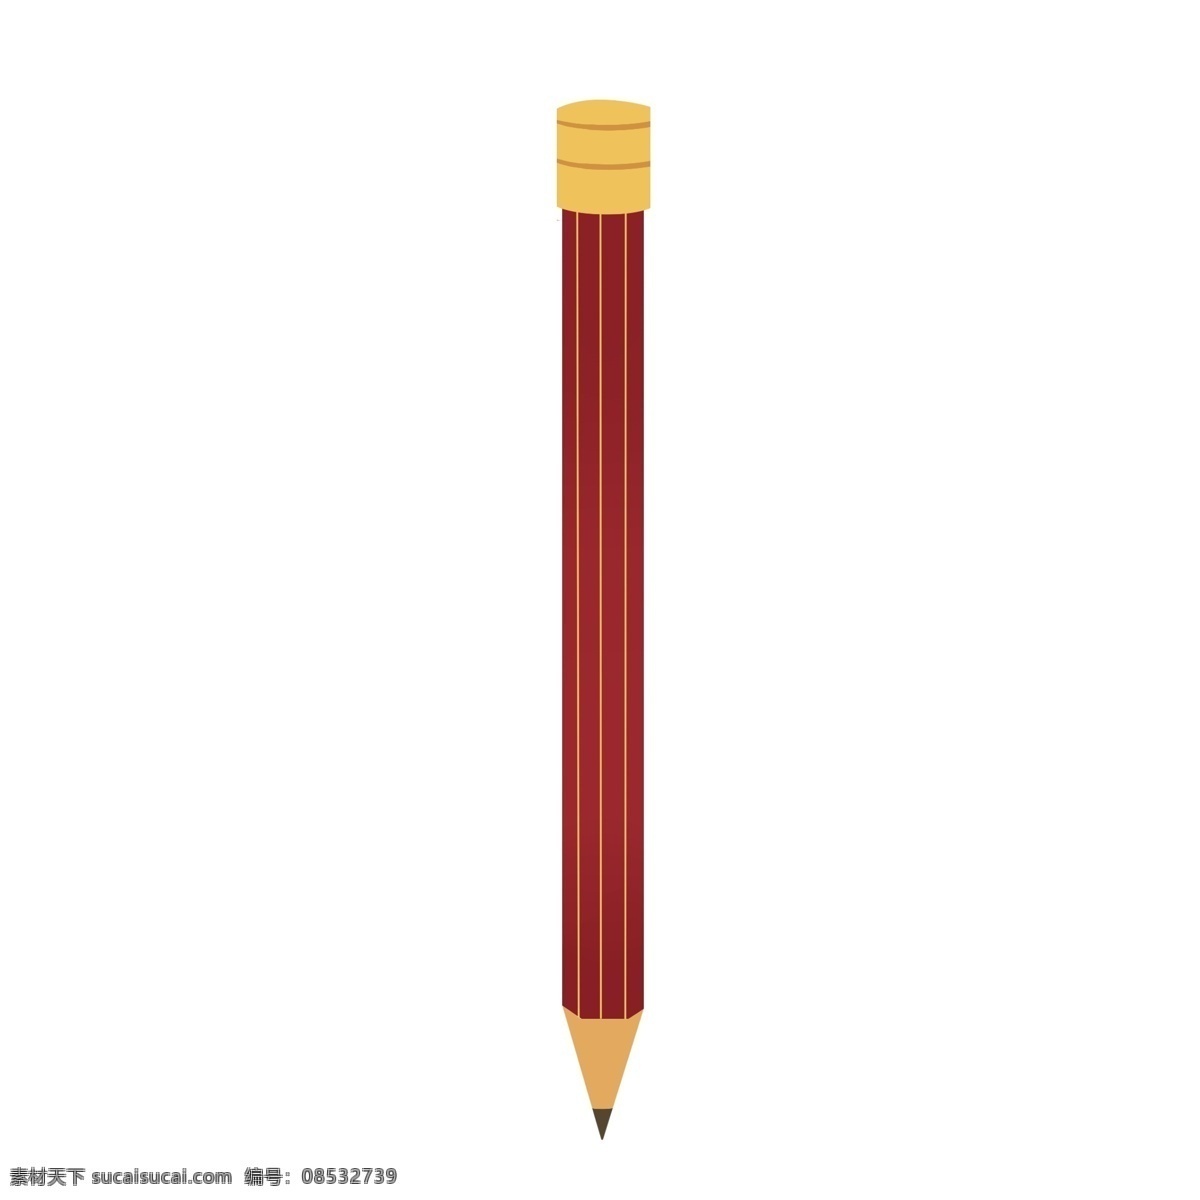 红色 铅笔 卡通 插画 红色的铅笔 卡通插画 文化知识 笔的插画 写字用笔 学习文具 铅笔的插画